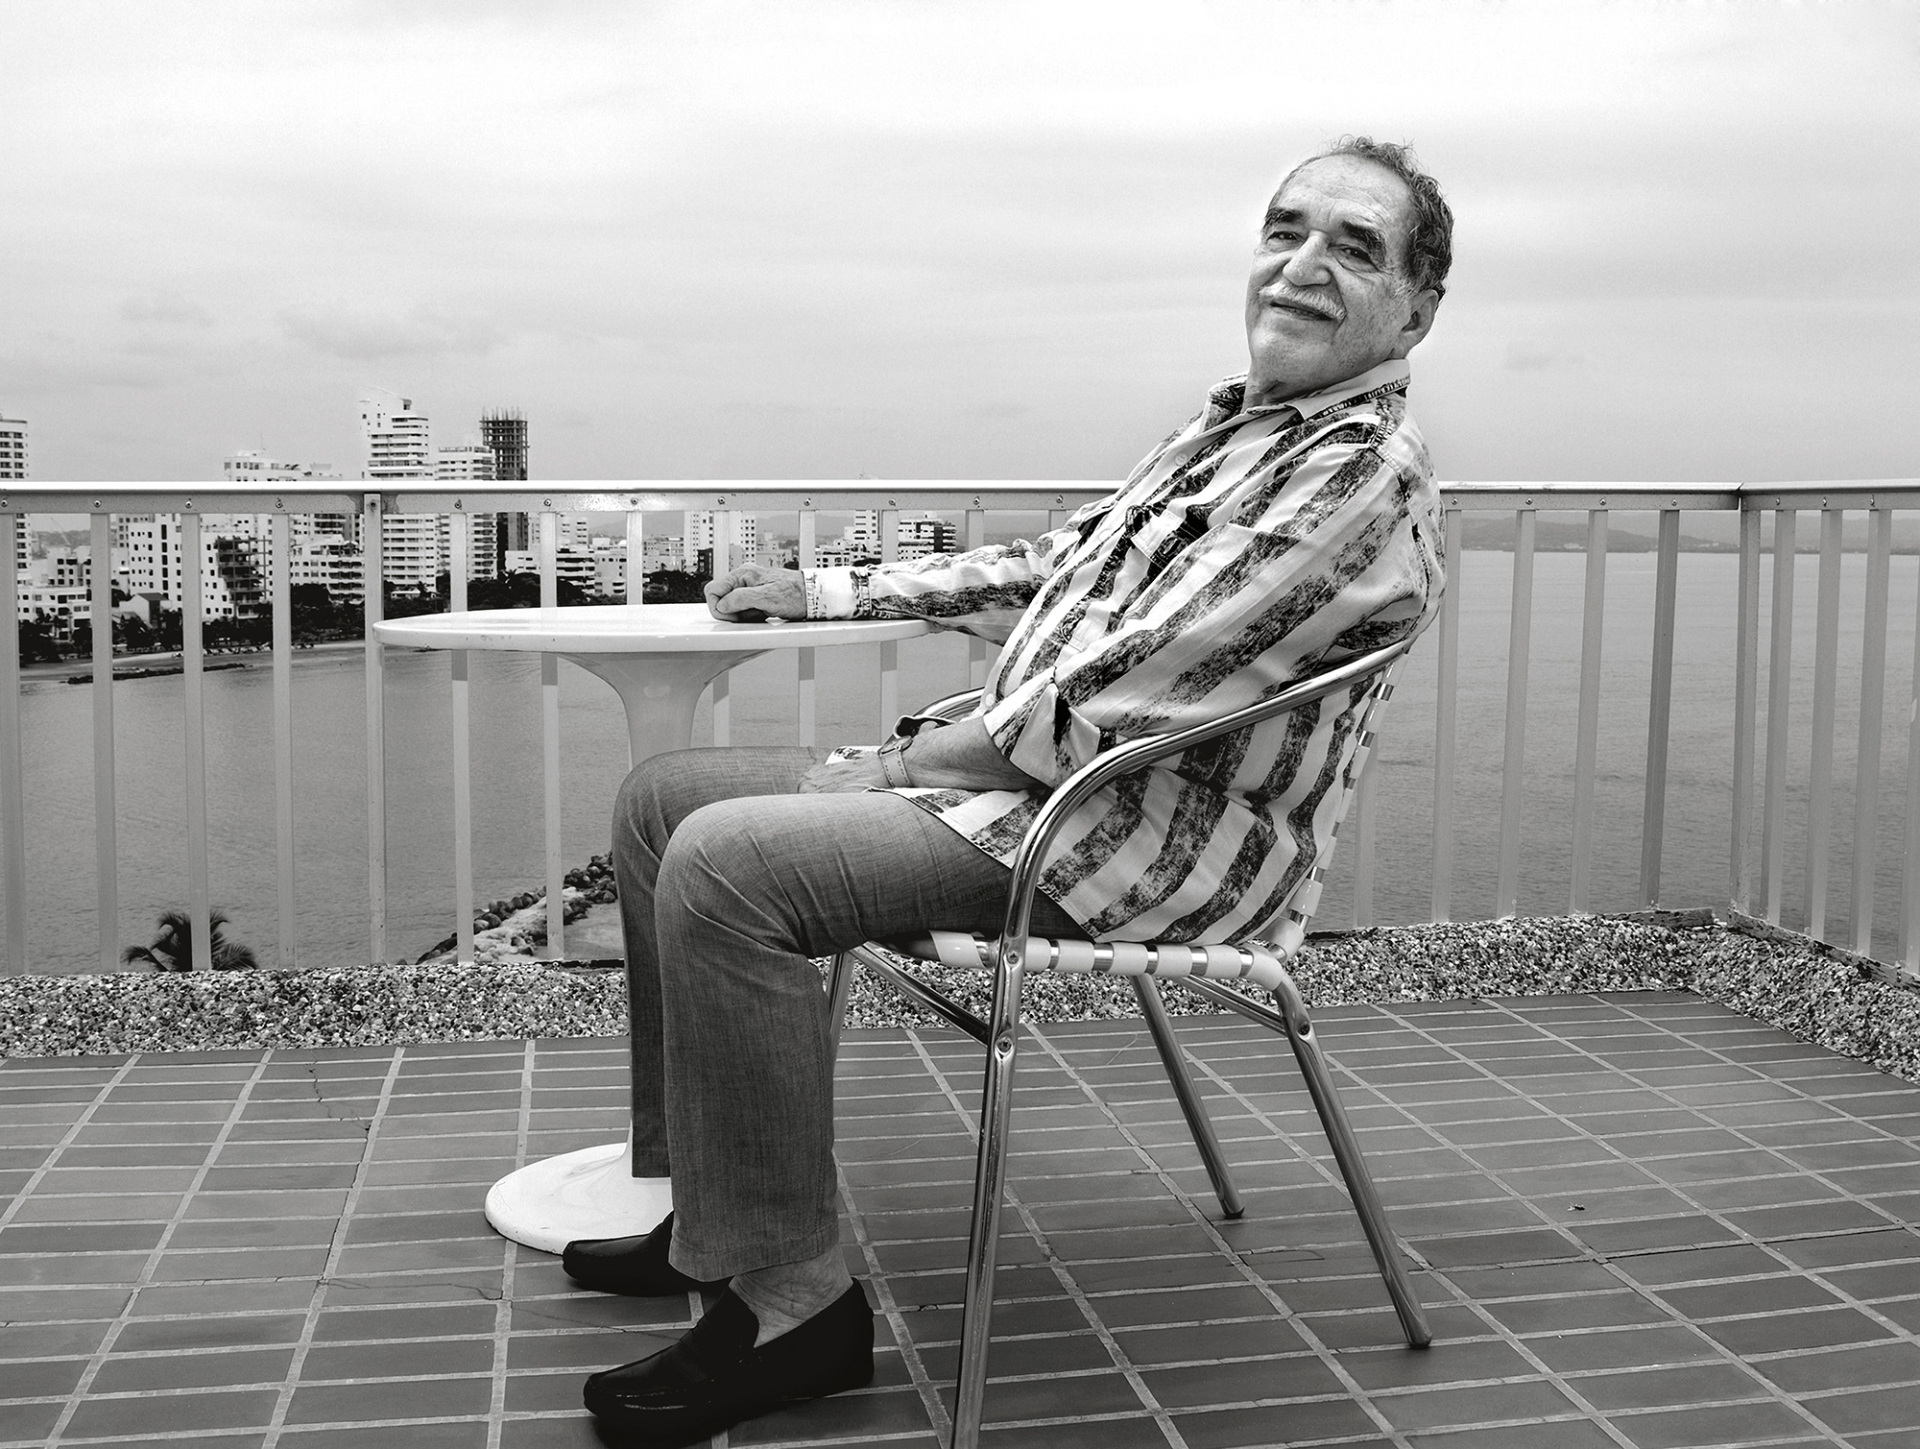 Ο Δημήτρης Γέρος φωτογραφίζει τον Γκάμπριελ Γκαρσία Μάρκες στην Καρταχένα, Άνοιξη 2007